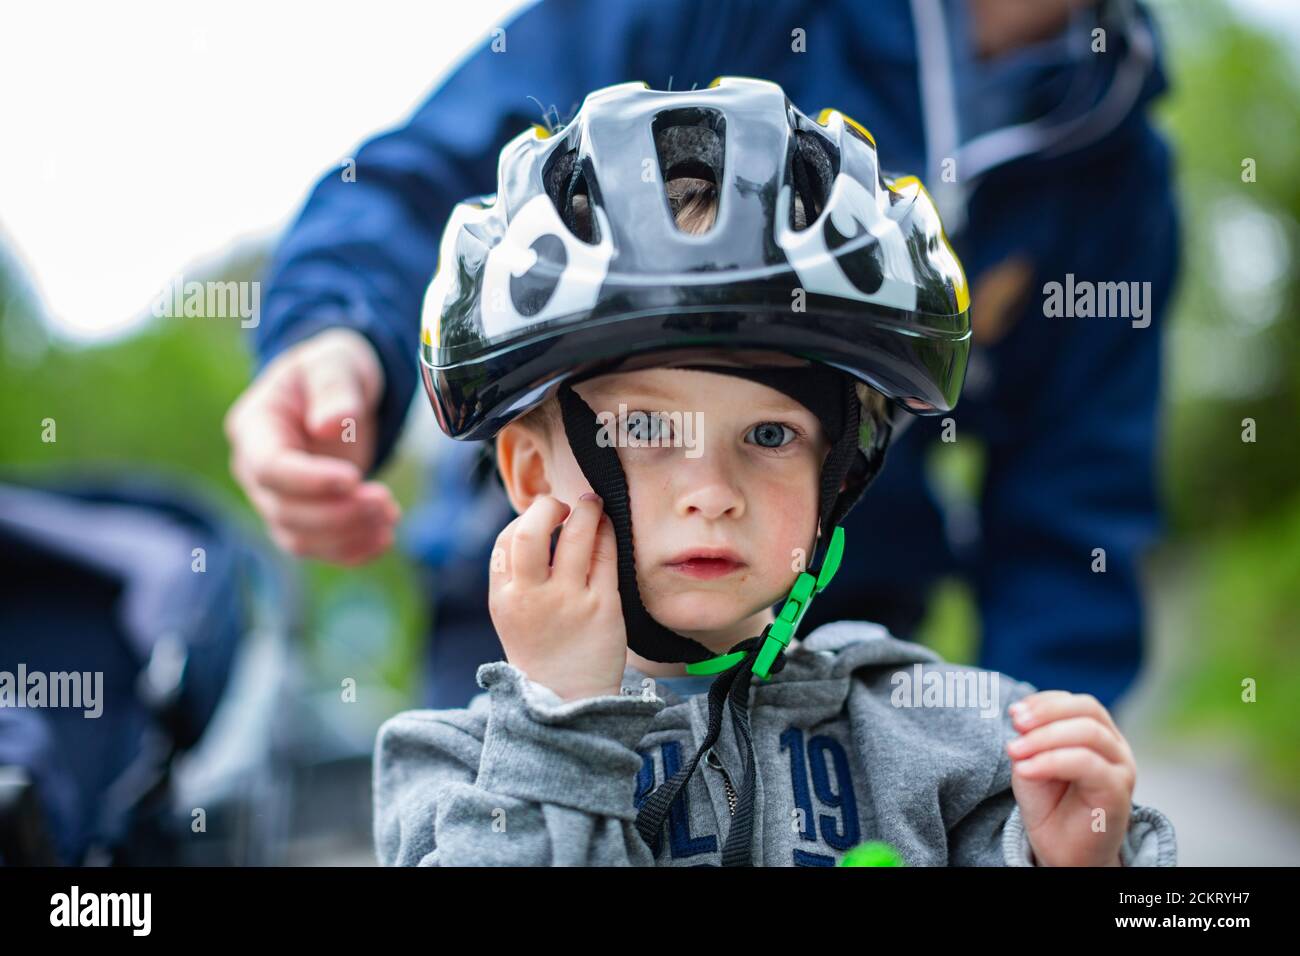 ragazzo giovane con un casco da bici grande, dads mano che si appoggia per regolare la cinghia Foto Stock